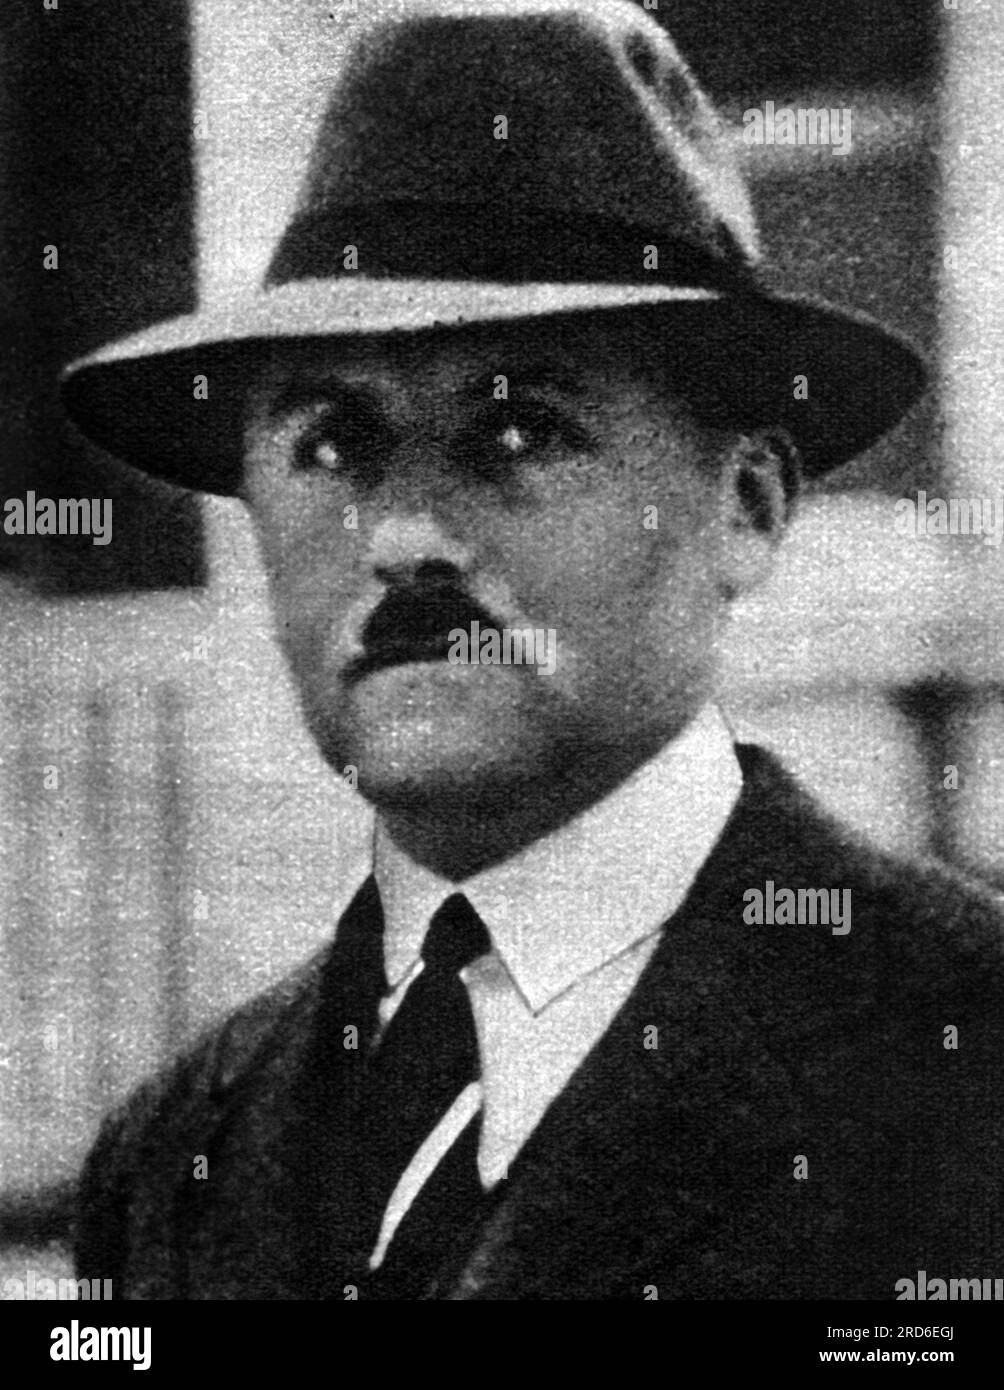 Wiseman, William, 10. Baronet, 1.2.1885 - 17,6.1962, britischer Geheimdienst-Agent und Banker, ZUSÄTZLICHE-RECHTE-FREIGABE-INFO-NICHT-VERFÜGBAR Stockfoto